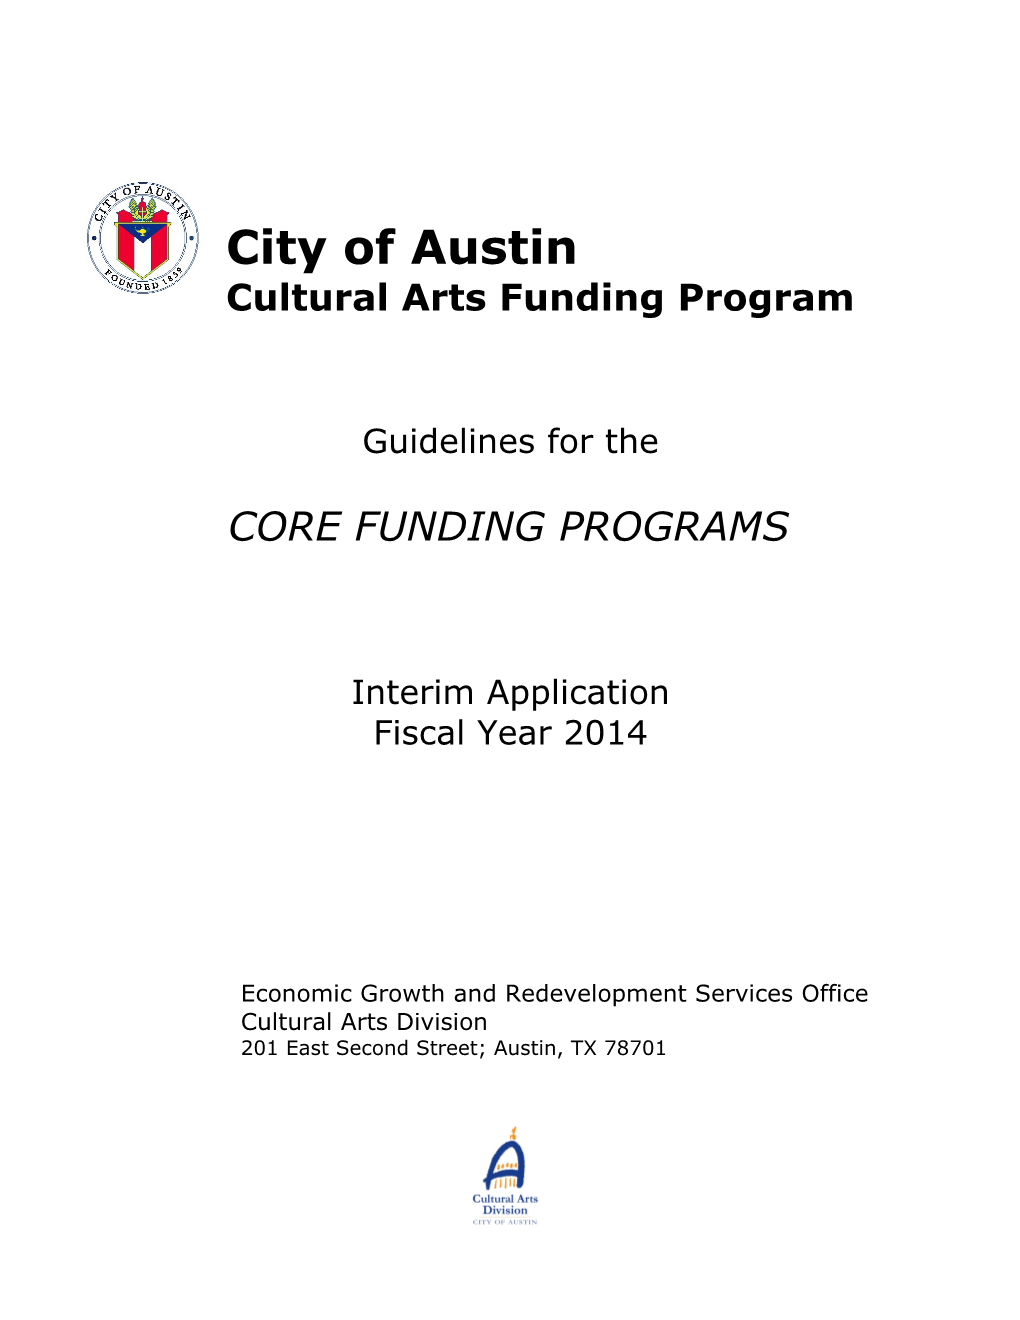 Cultural Arts Funding Program